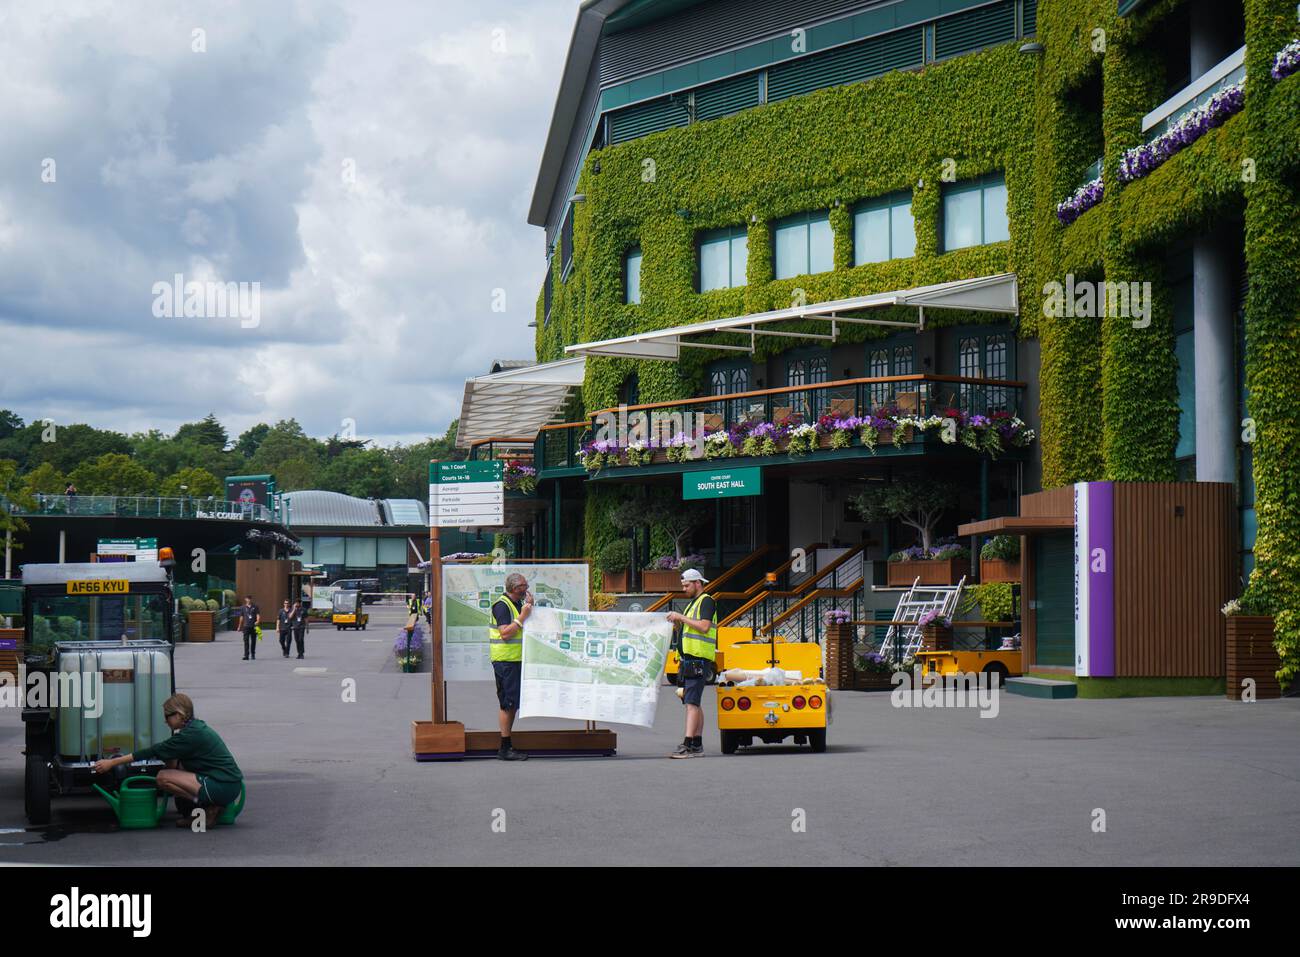 Londra Regno Unito. 26 giugno 2023 personale dell'All England Lawn Tennis Club con una settimana prima dell'inizio dei Campionati di Wimbledon il 3 luglio. Crediti: amer ghazzal/Alamy Live News Foto Stock